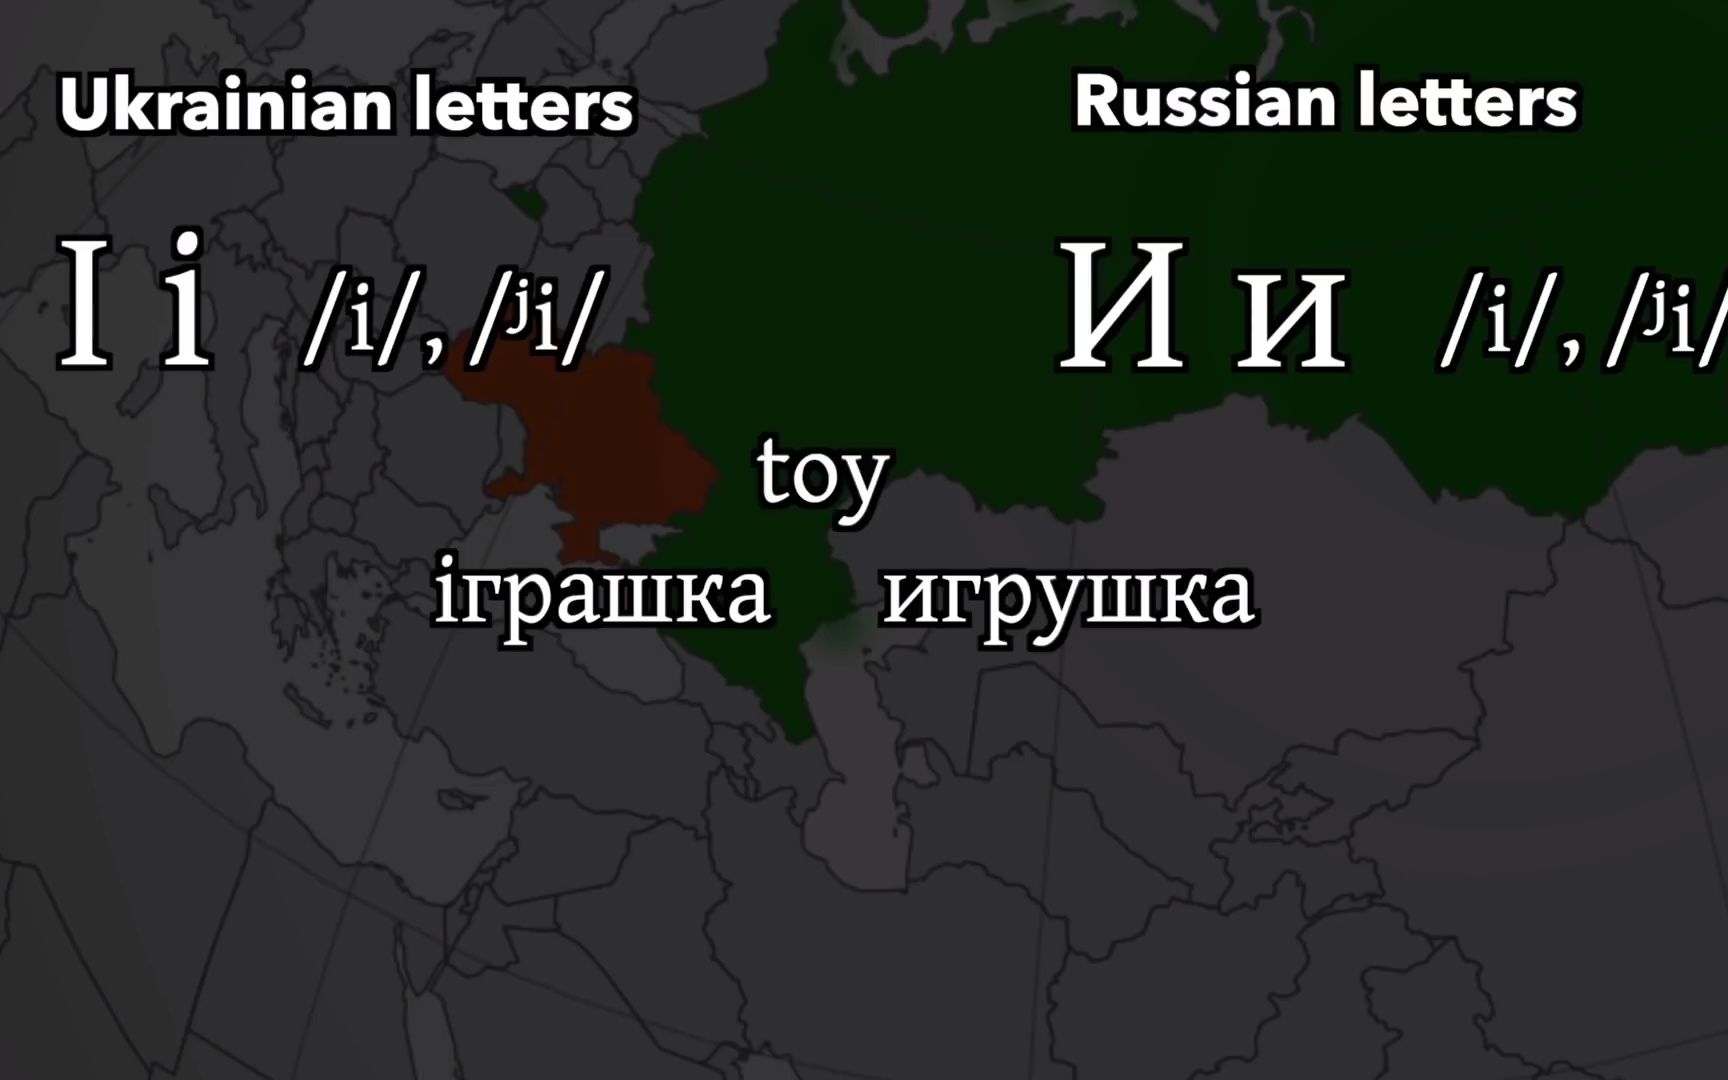 西乌克兰语言图片